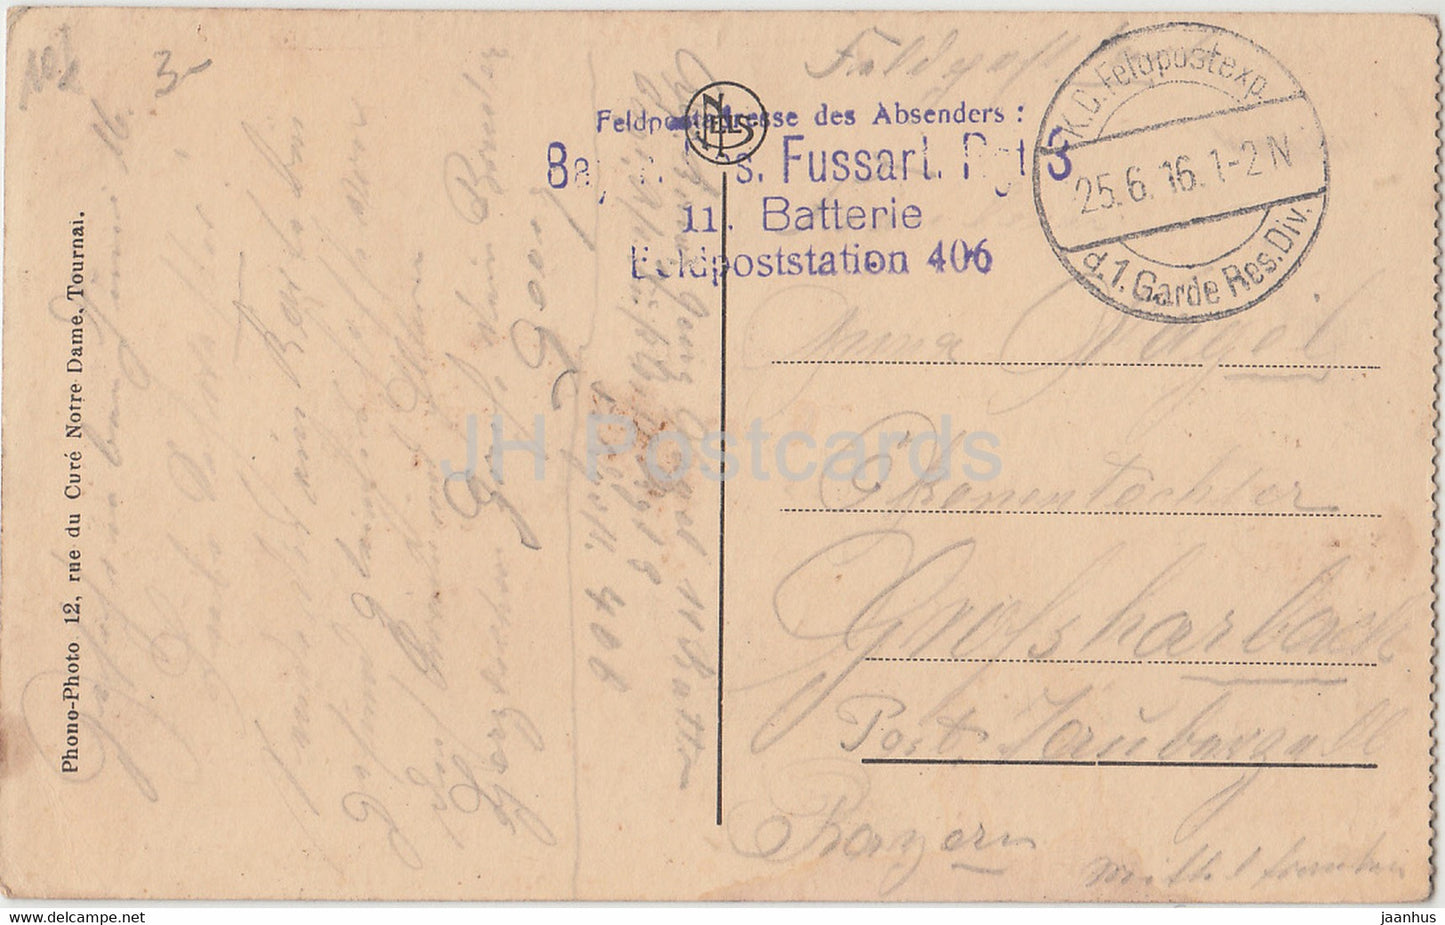 Douai - Hôtel de Ville - Salle Gothique - Bayr. Rés.-Fussart.-Rgt. Feldpost - carte postale ancienne - 1916 - France - utilisé